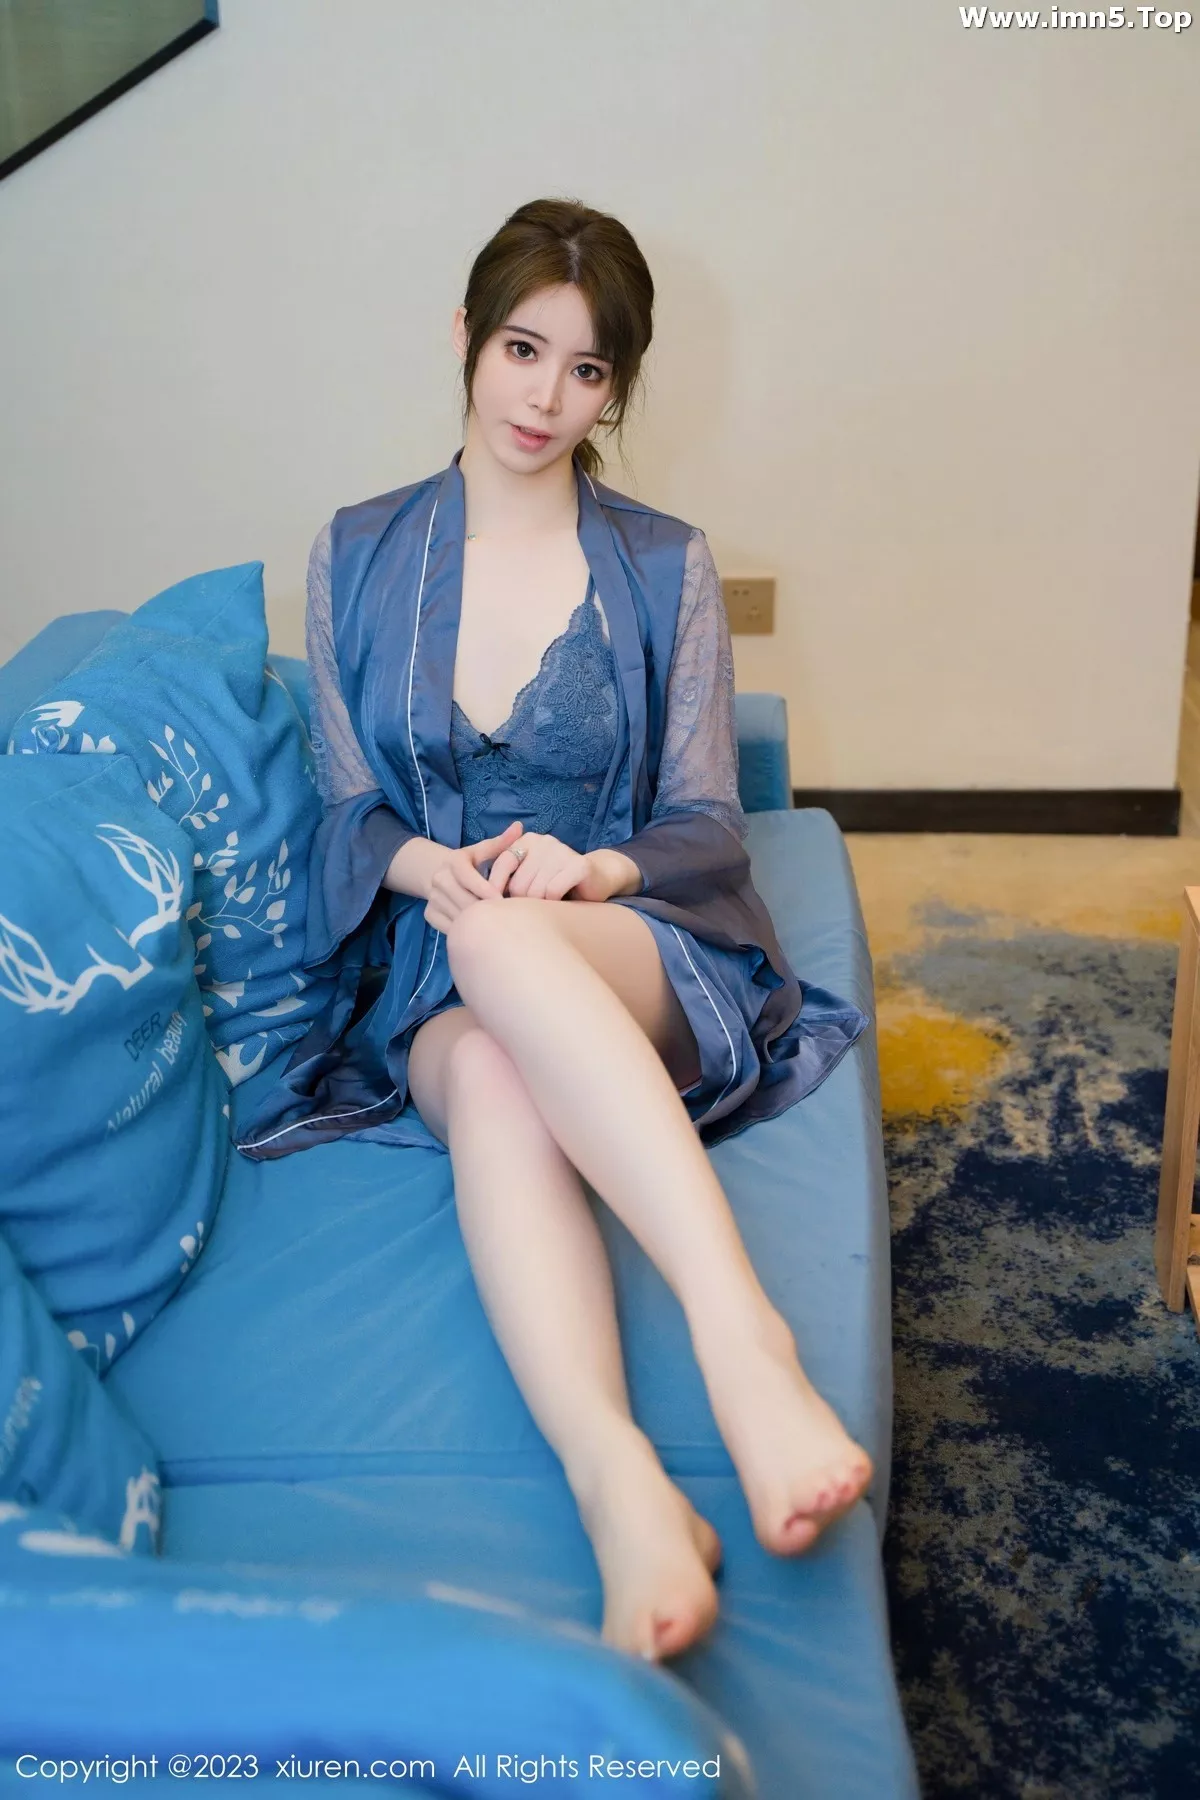 [XiuRen秀人网]No.7130_模特yoo优优性感蓝色蕾丝情趣睡裙半撩秀翘臀美腿迷人诱惑写真83P